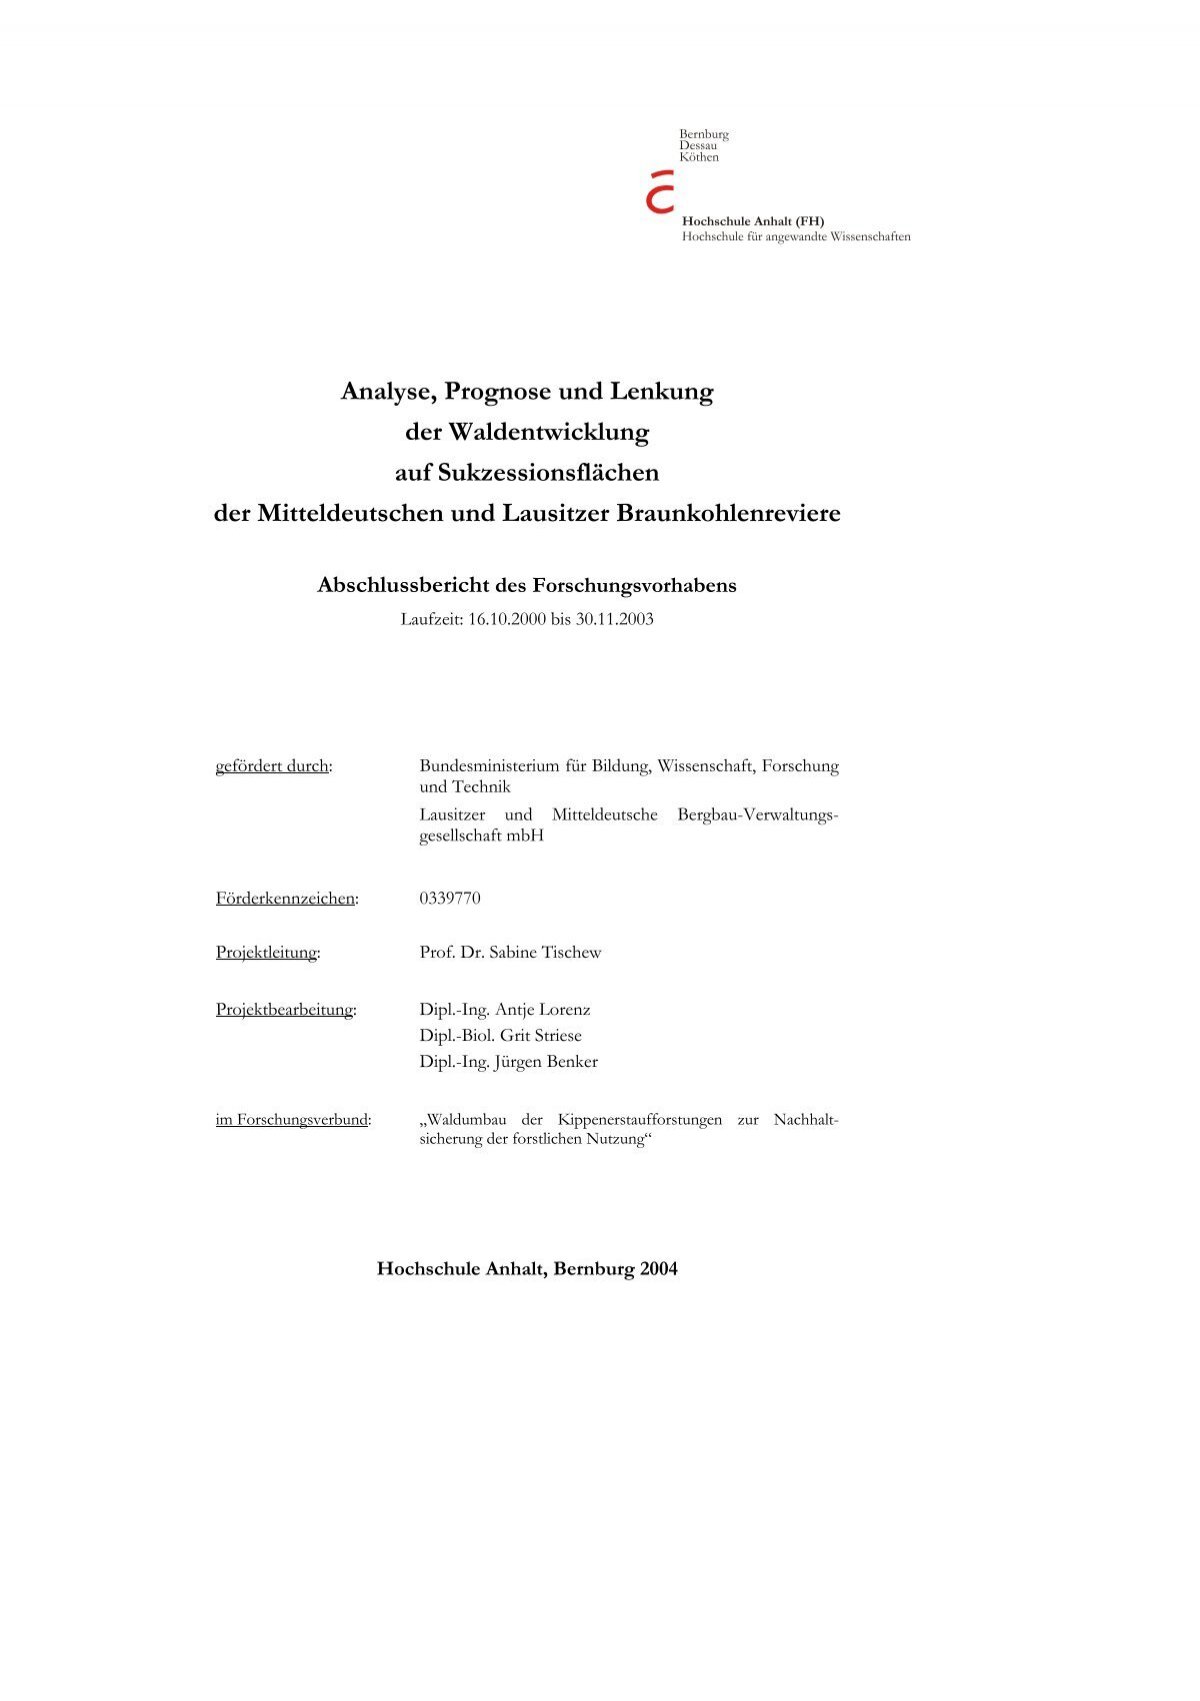 zum Abschlussbericht (pdf) - Hochschule Anhalt